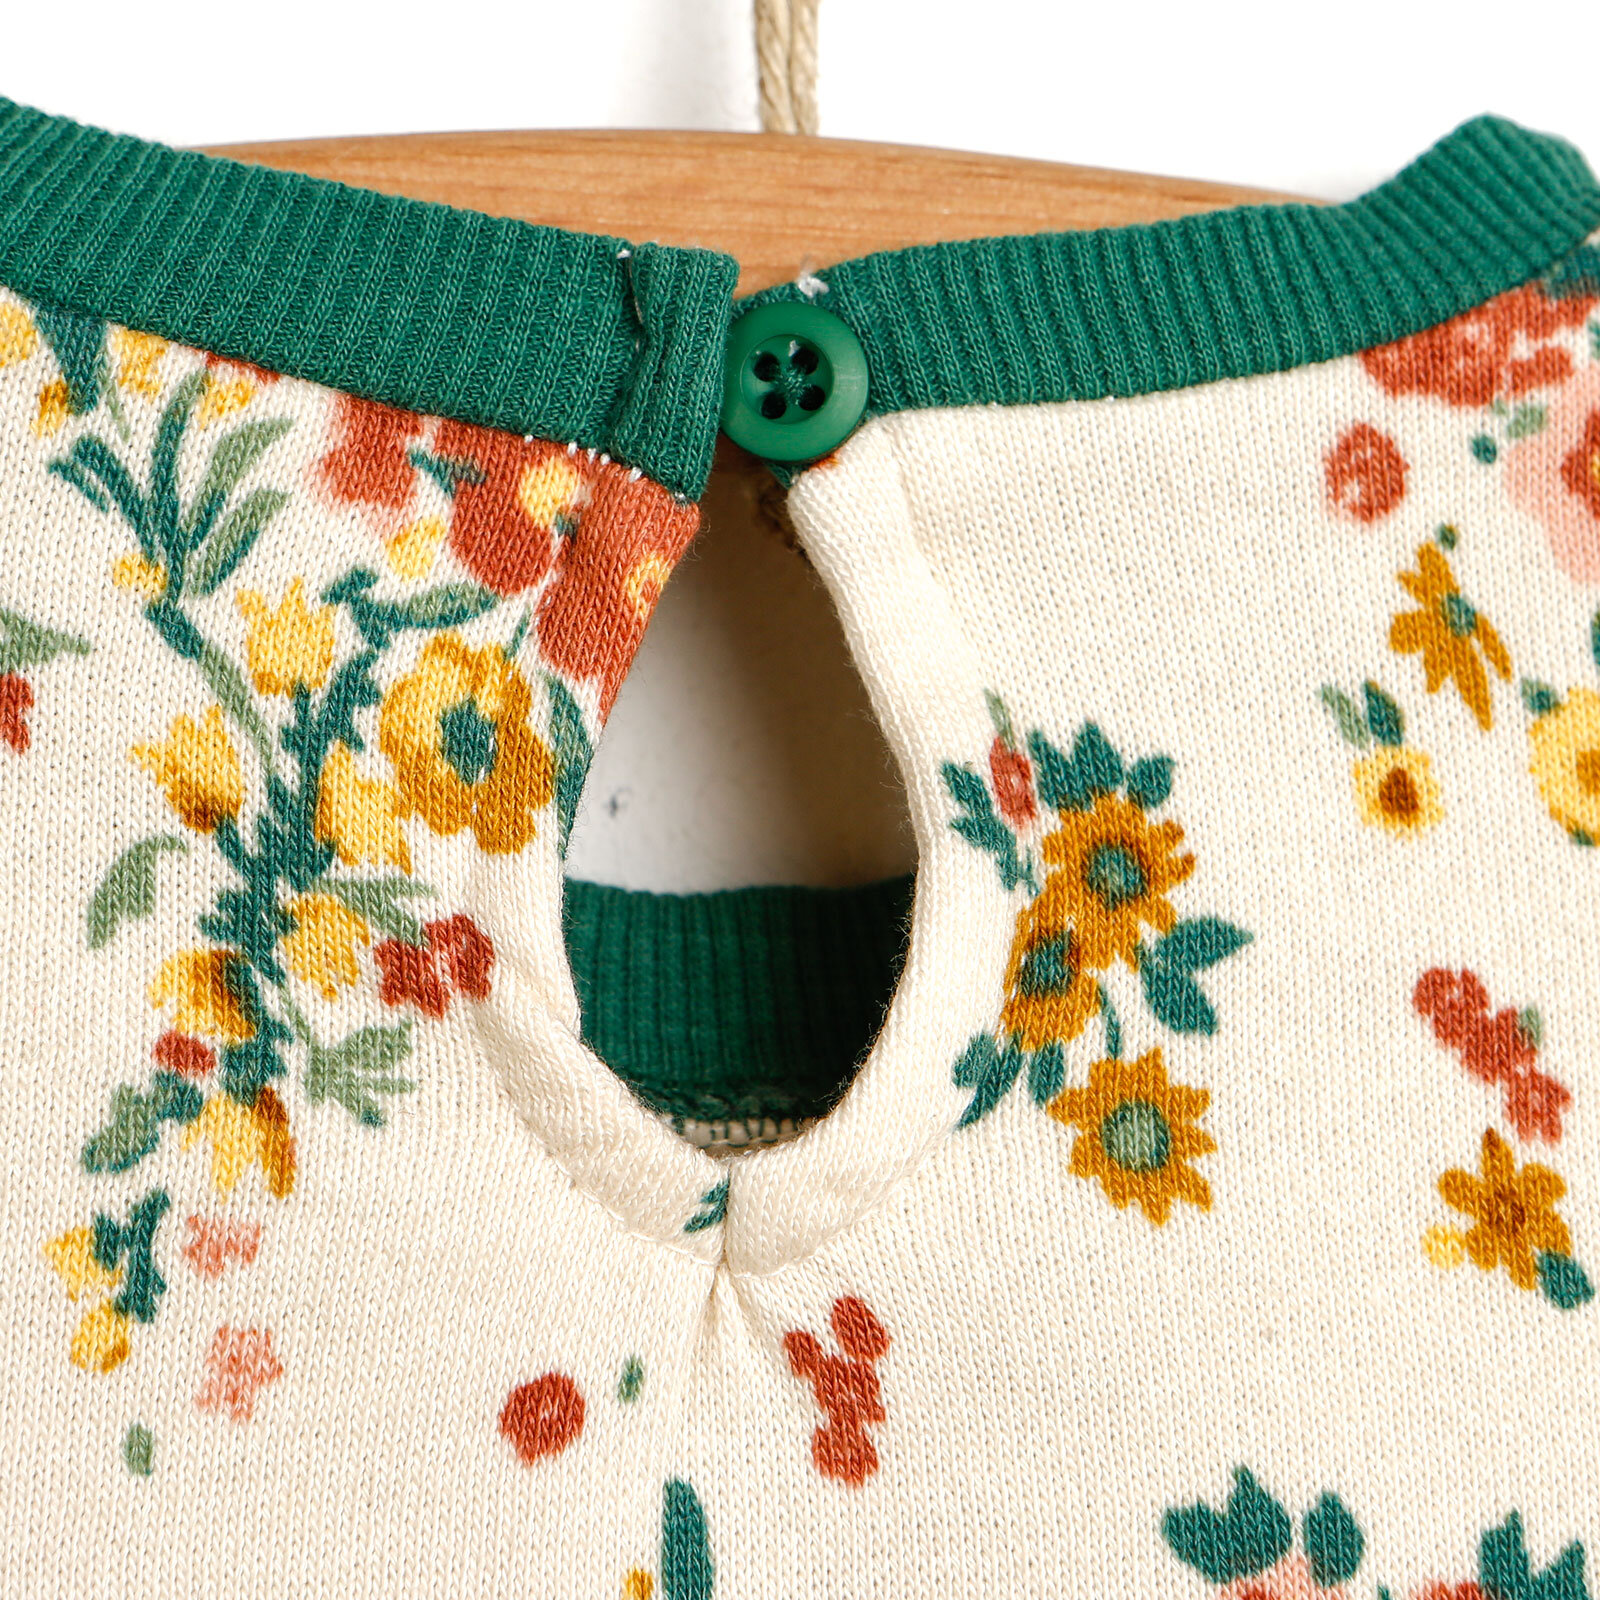 Basic Kız Bebek Çiçekli Fırfırlı Sweatshirt-Tayt Takım